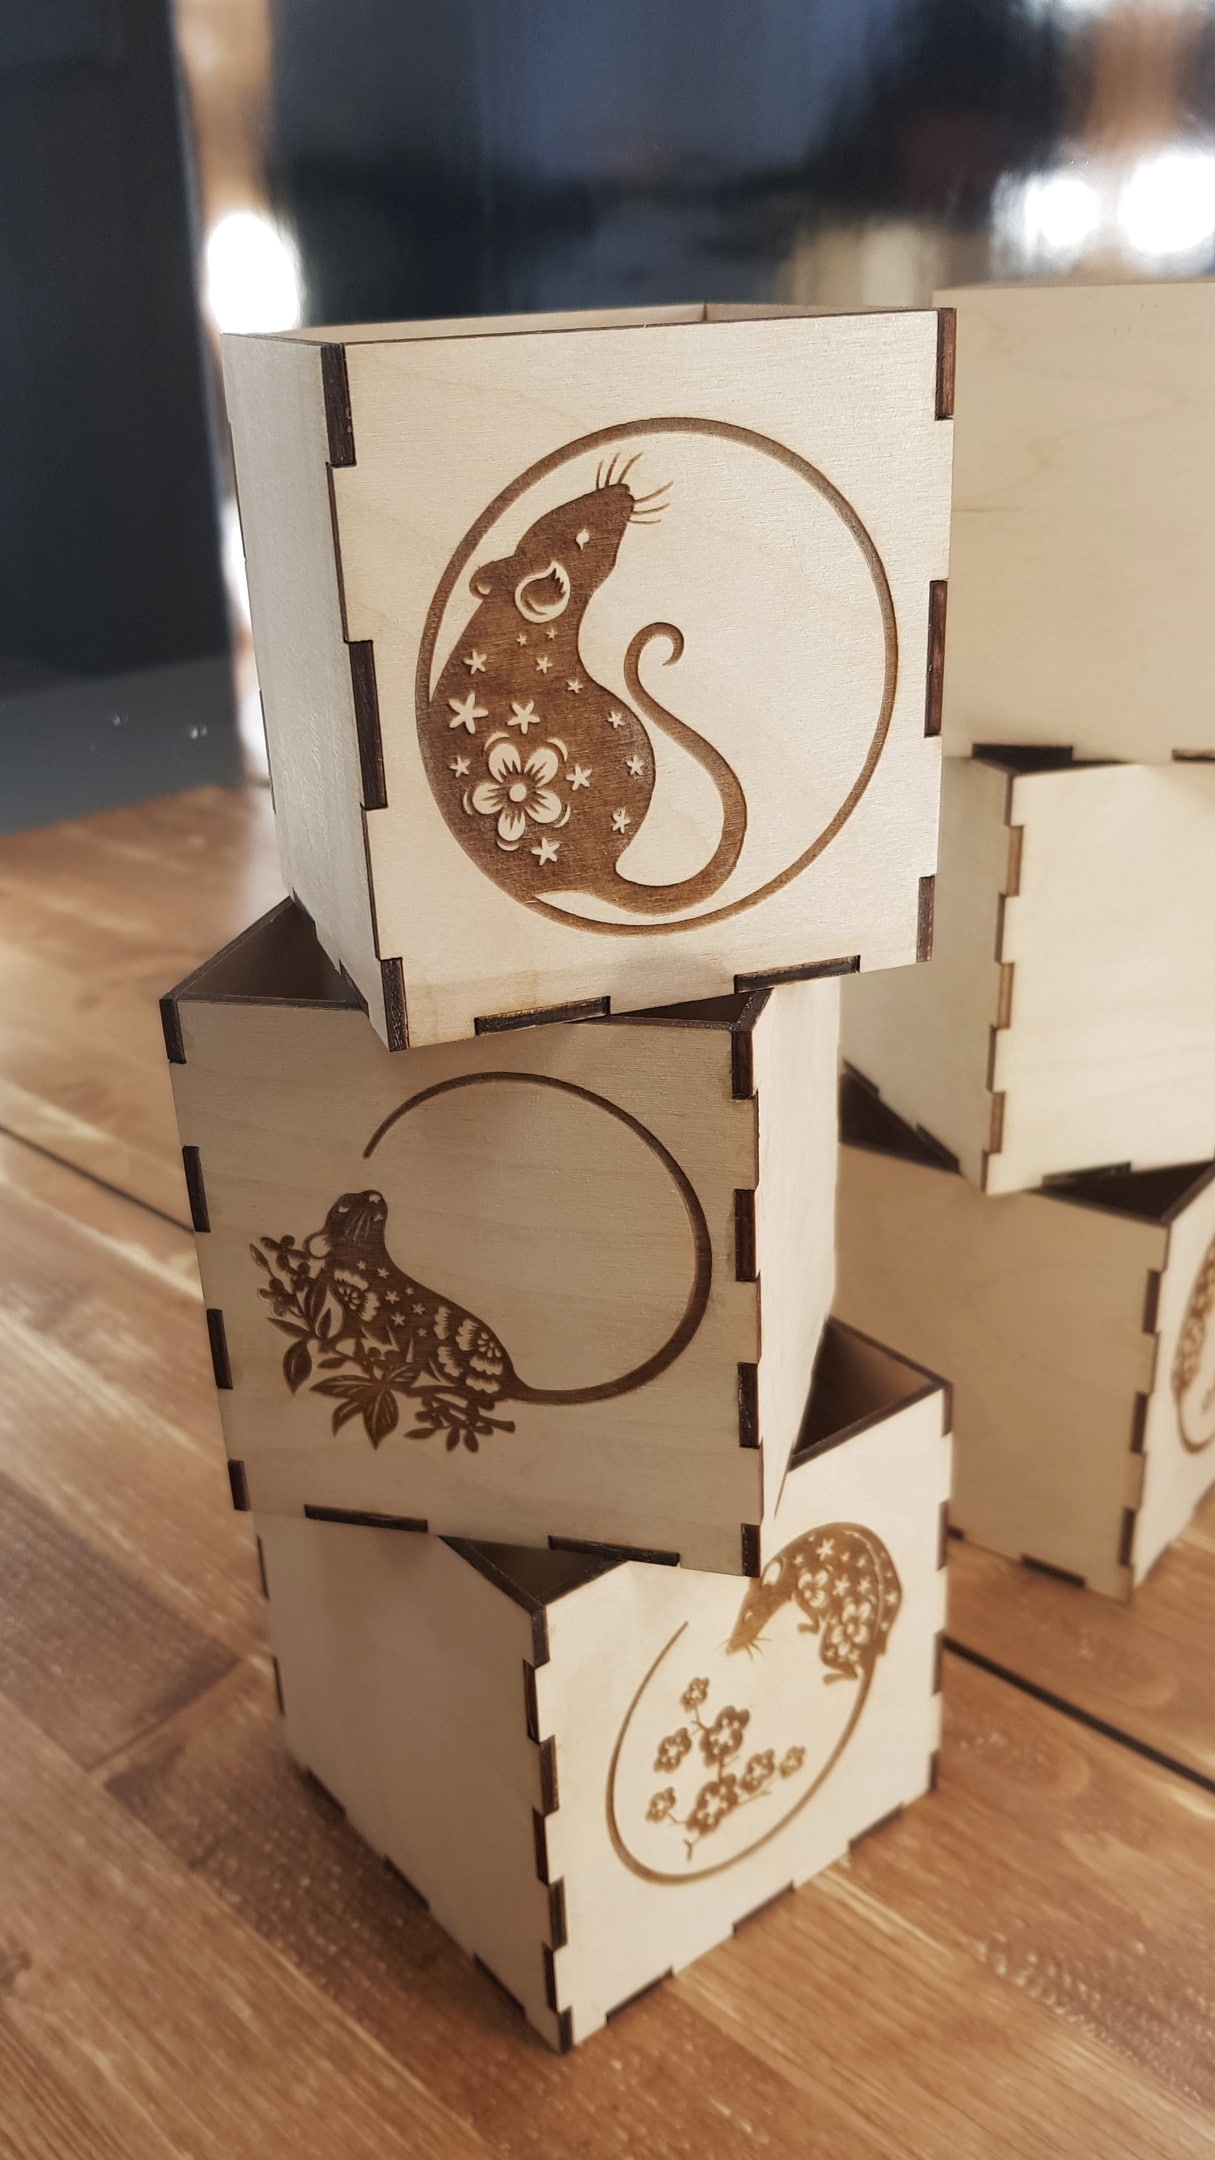 激光切割雕刻新年装饰木盒